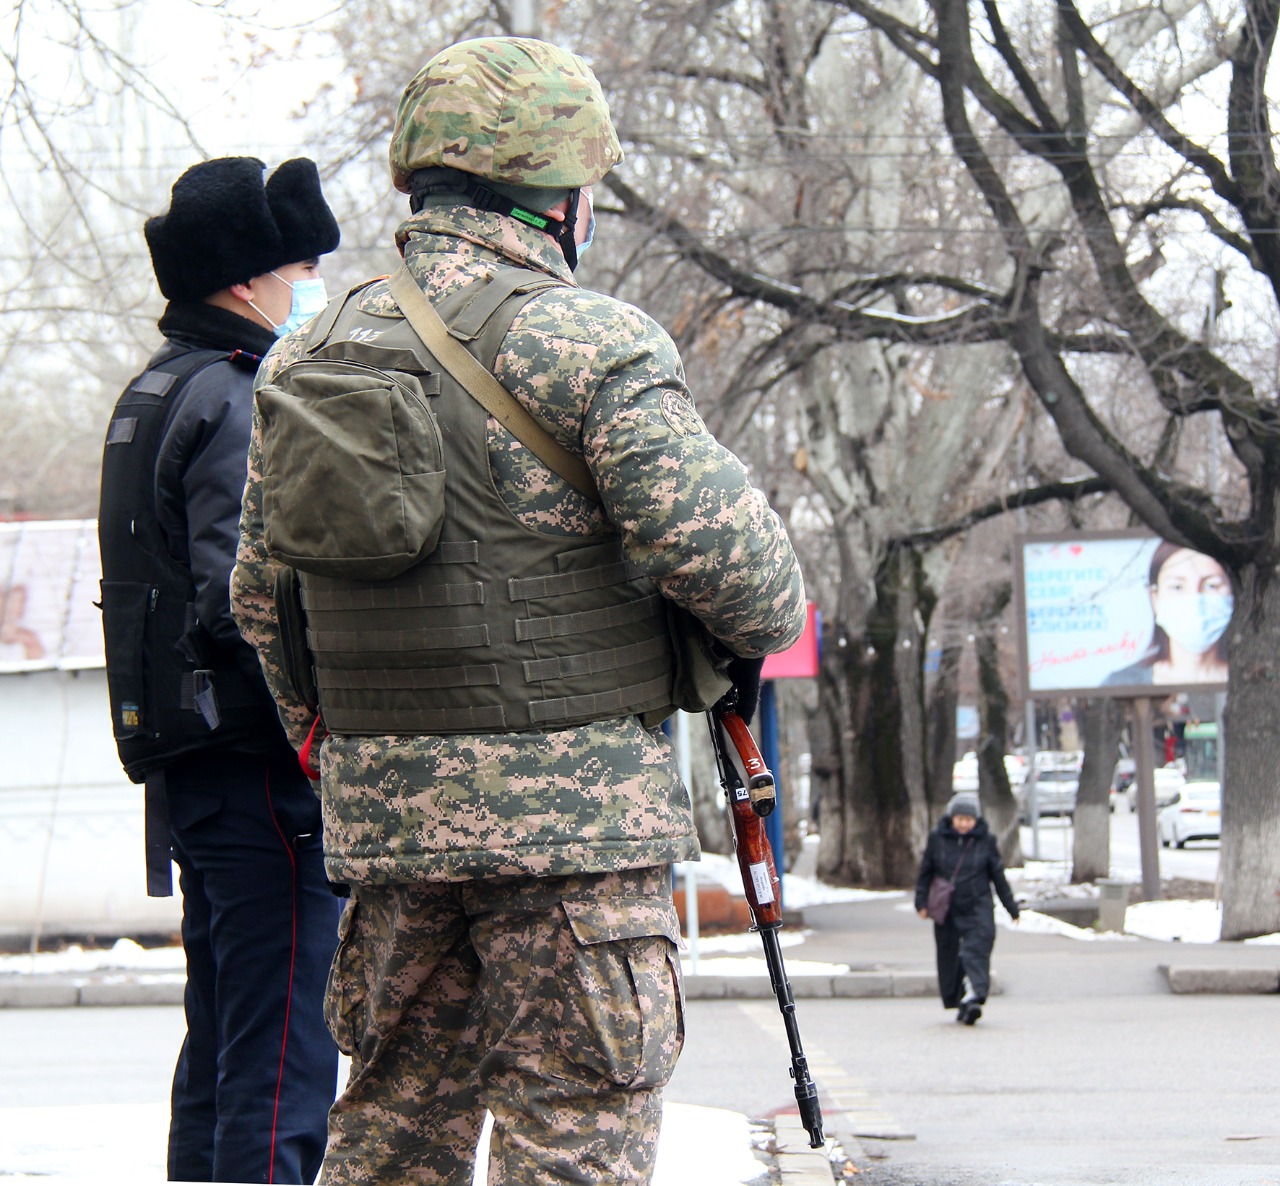 Видео полицейских зданий после штурма показал ДП Алматы  